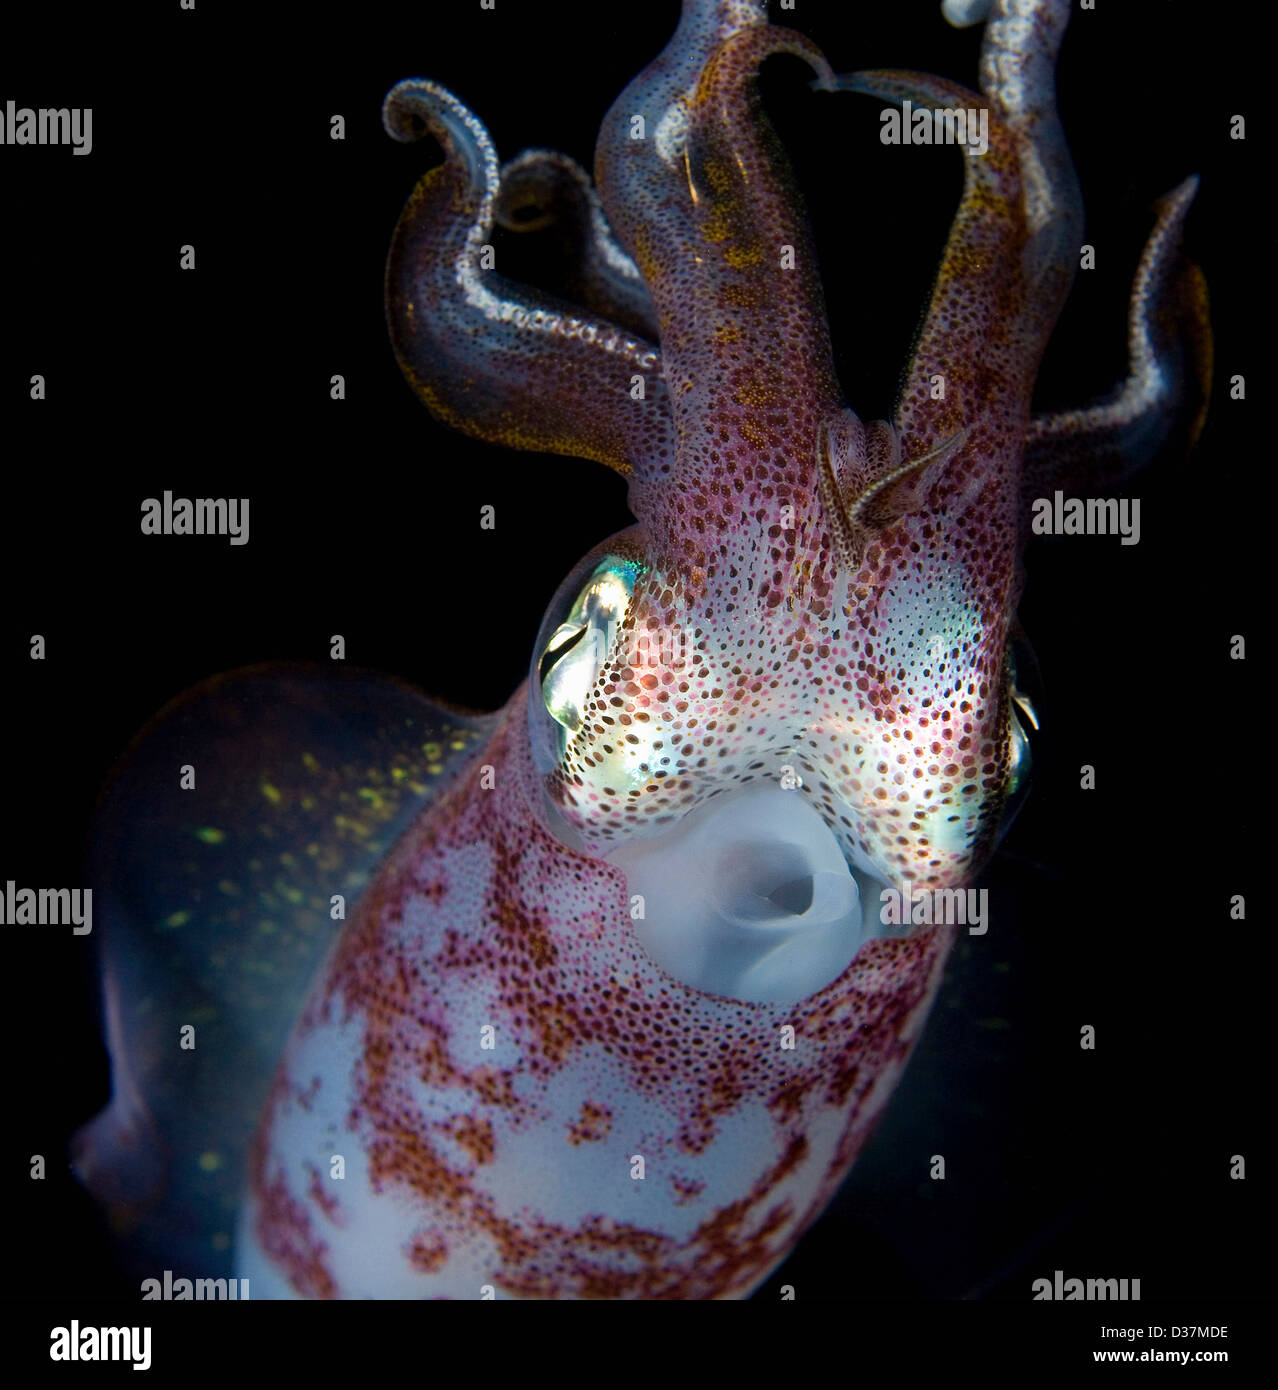 Cerca de squid en la noche subacuática Foto de stock